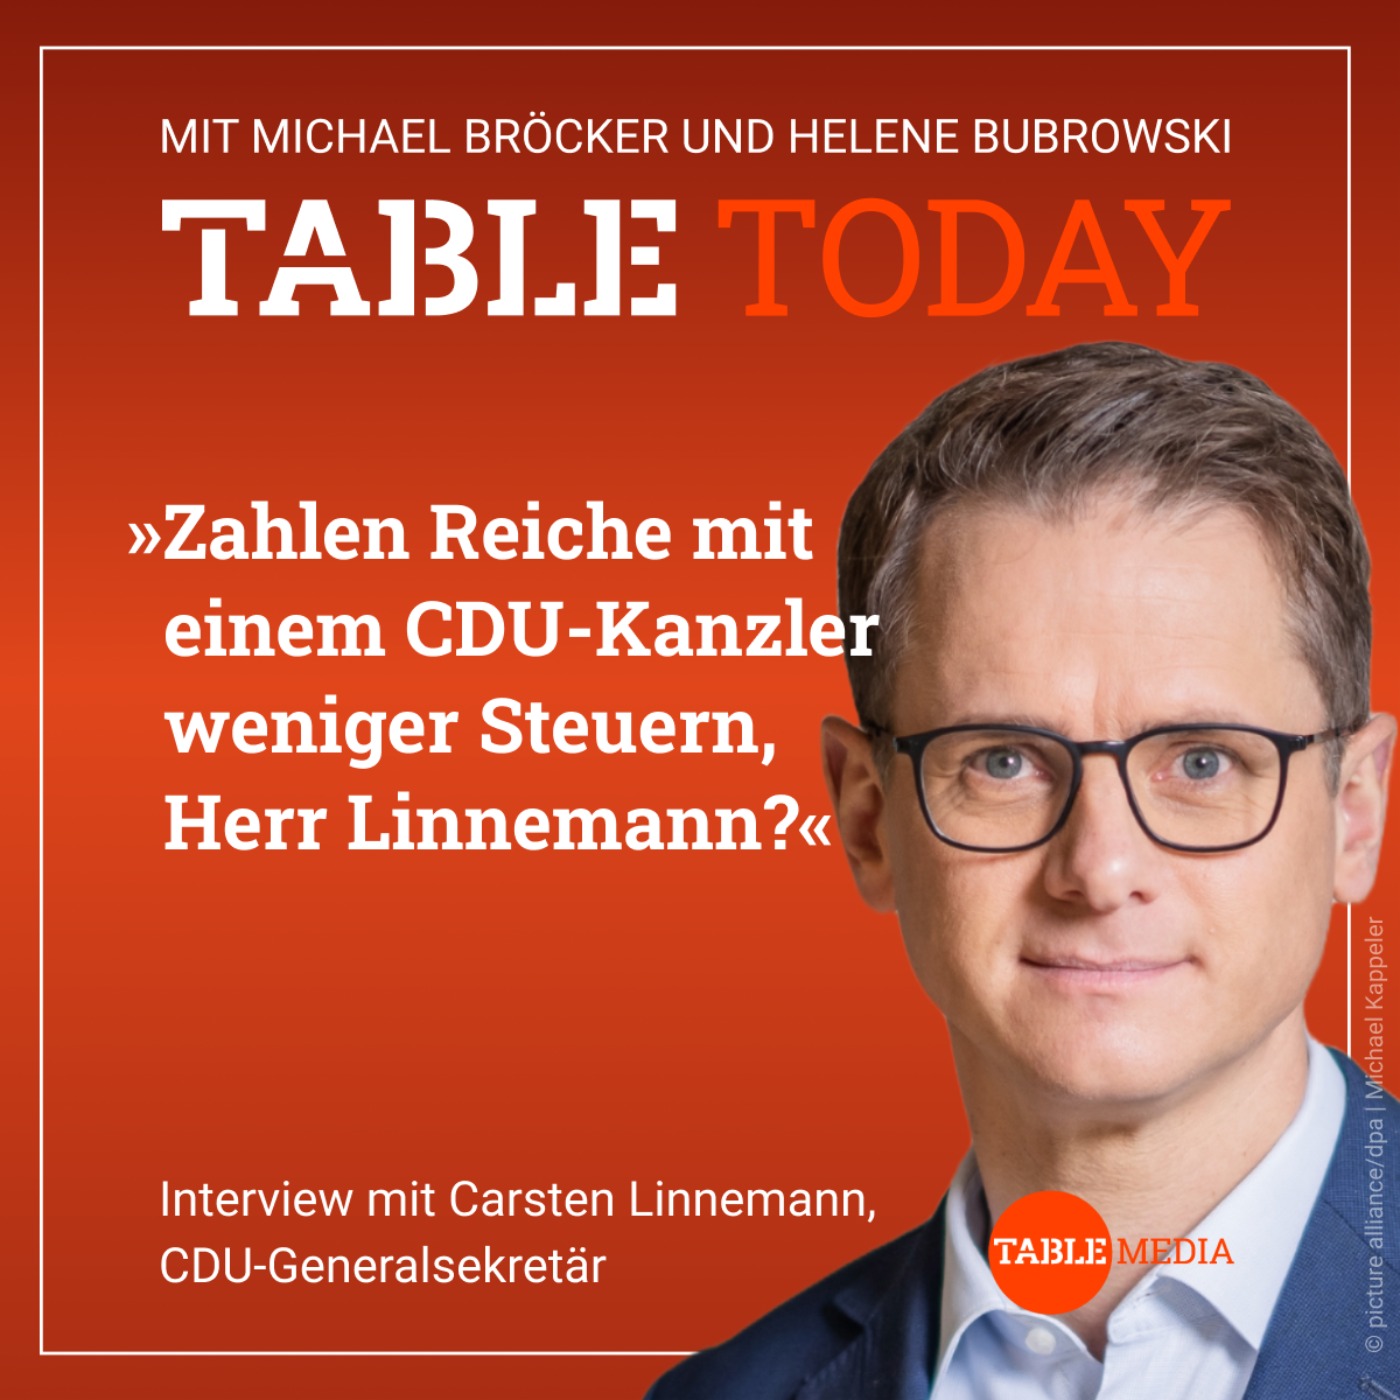 Zahlen Reiche mit einem CDU-Kanzler weniger Steuern, Herr Linnemann?